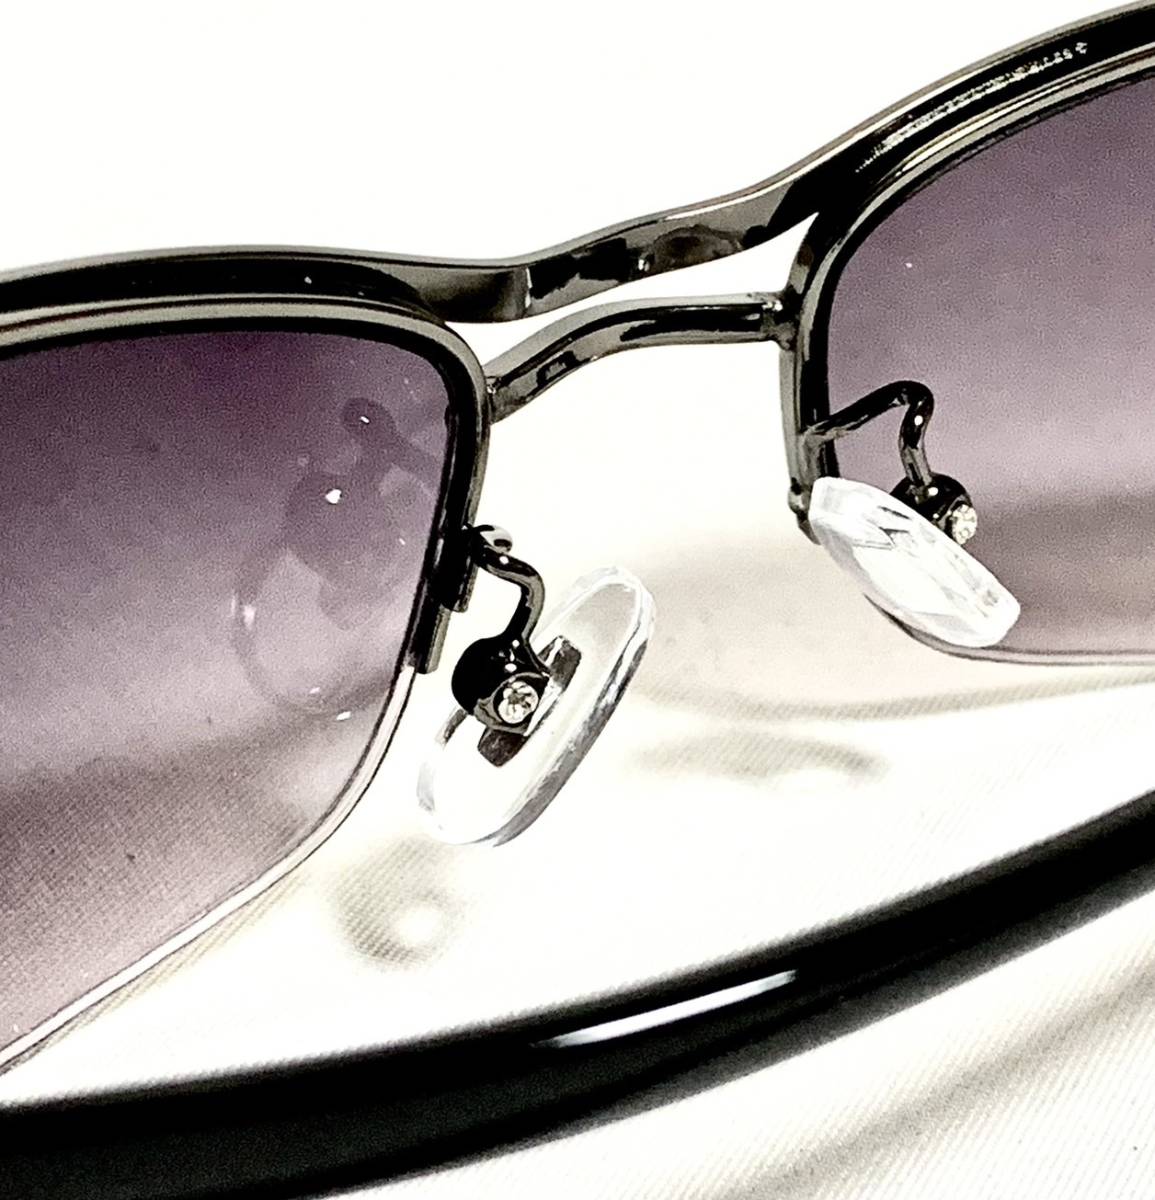 ブラックメタルフレーム スモークレンズ イケイケサングラス 薄いミラーレンズ かっこいいサングラス メンズサングラス 22191C_画像5